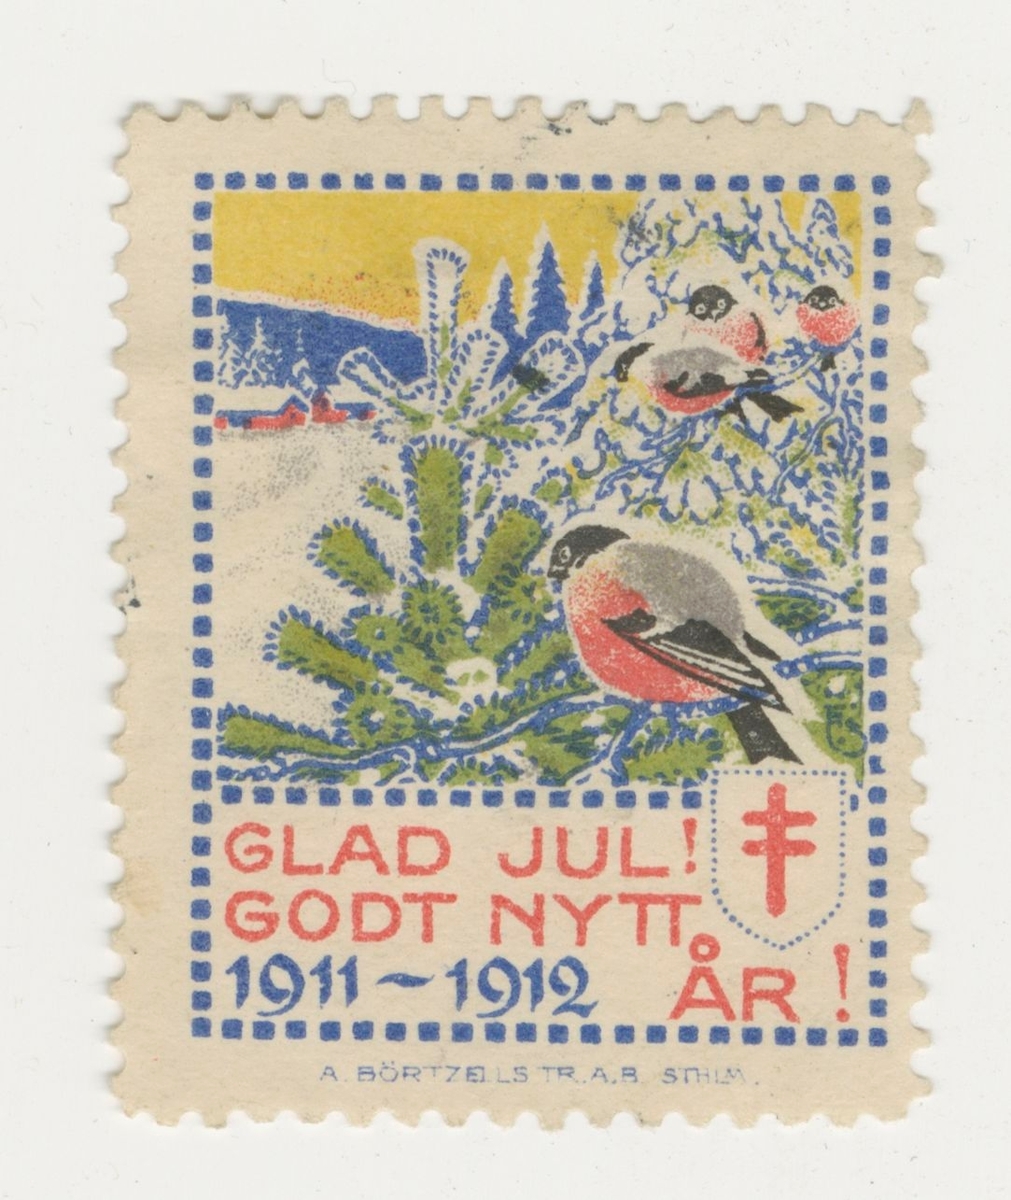 Ett märke för önskning av Glad Jul och Gott Nytt År 1911-1912.

Ingår i en samling välgörenhetsmärken.